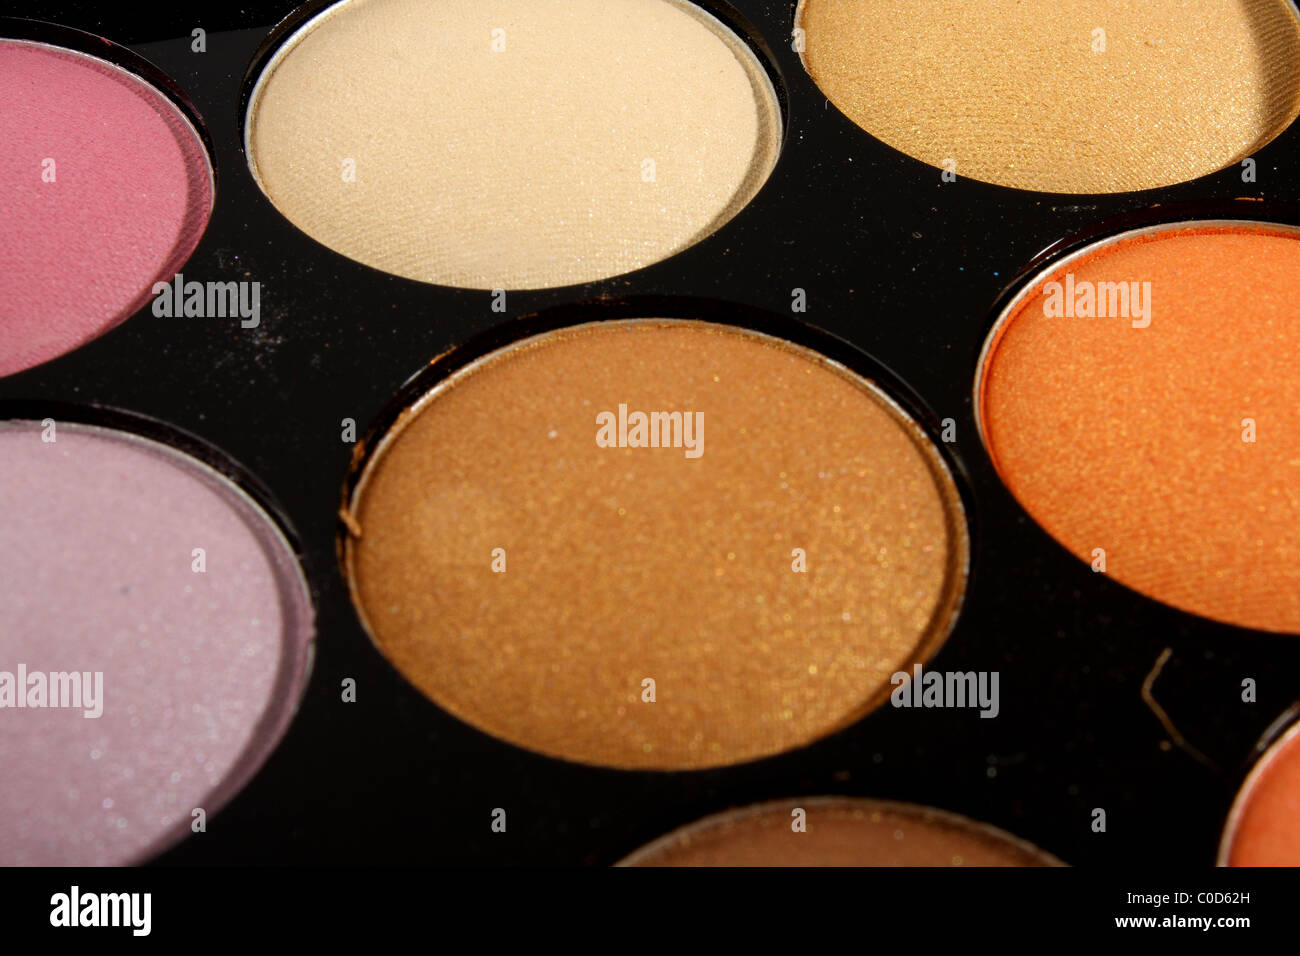 Un caja de accesorios de maquillaje y cosméticos incluidos blusher, polvo y sombra intensos en una gama de colores profesional Foto de stock